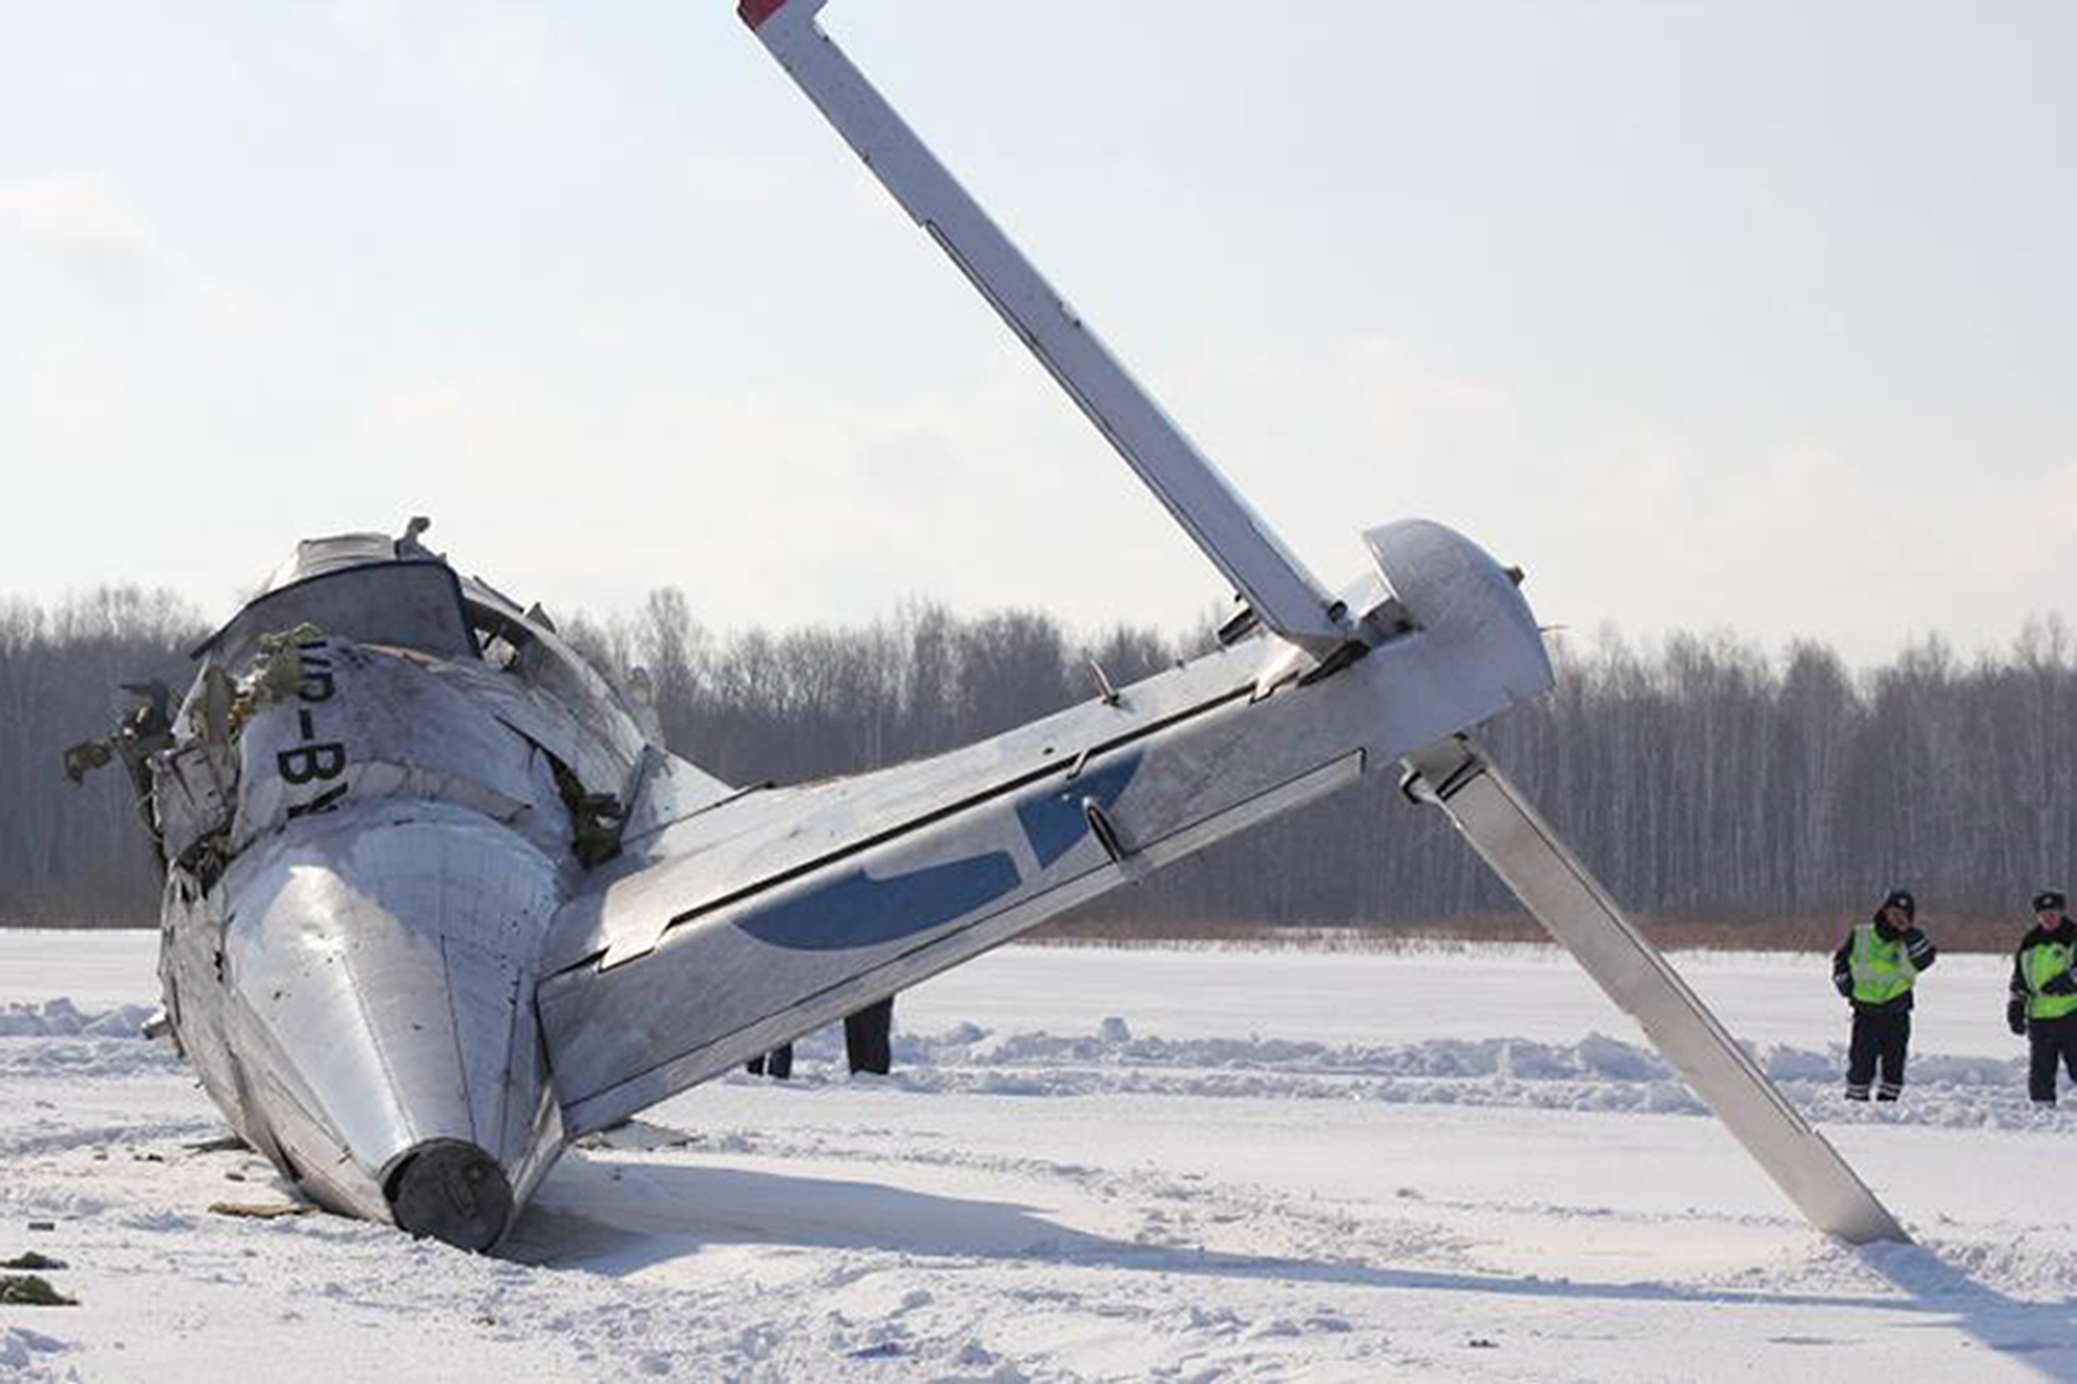 En passagerare missade flighten enligt myndigheterna och undkom därför olyckan.